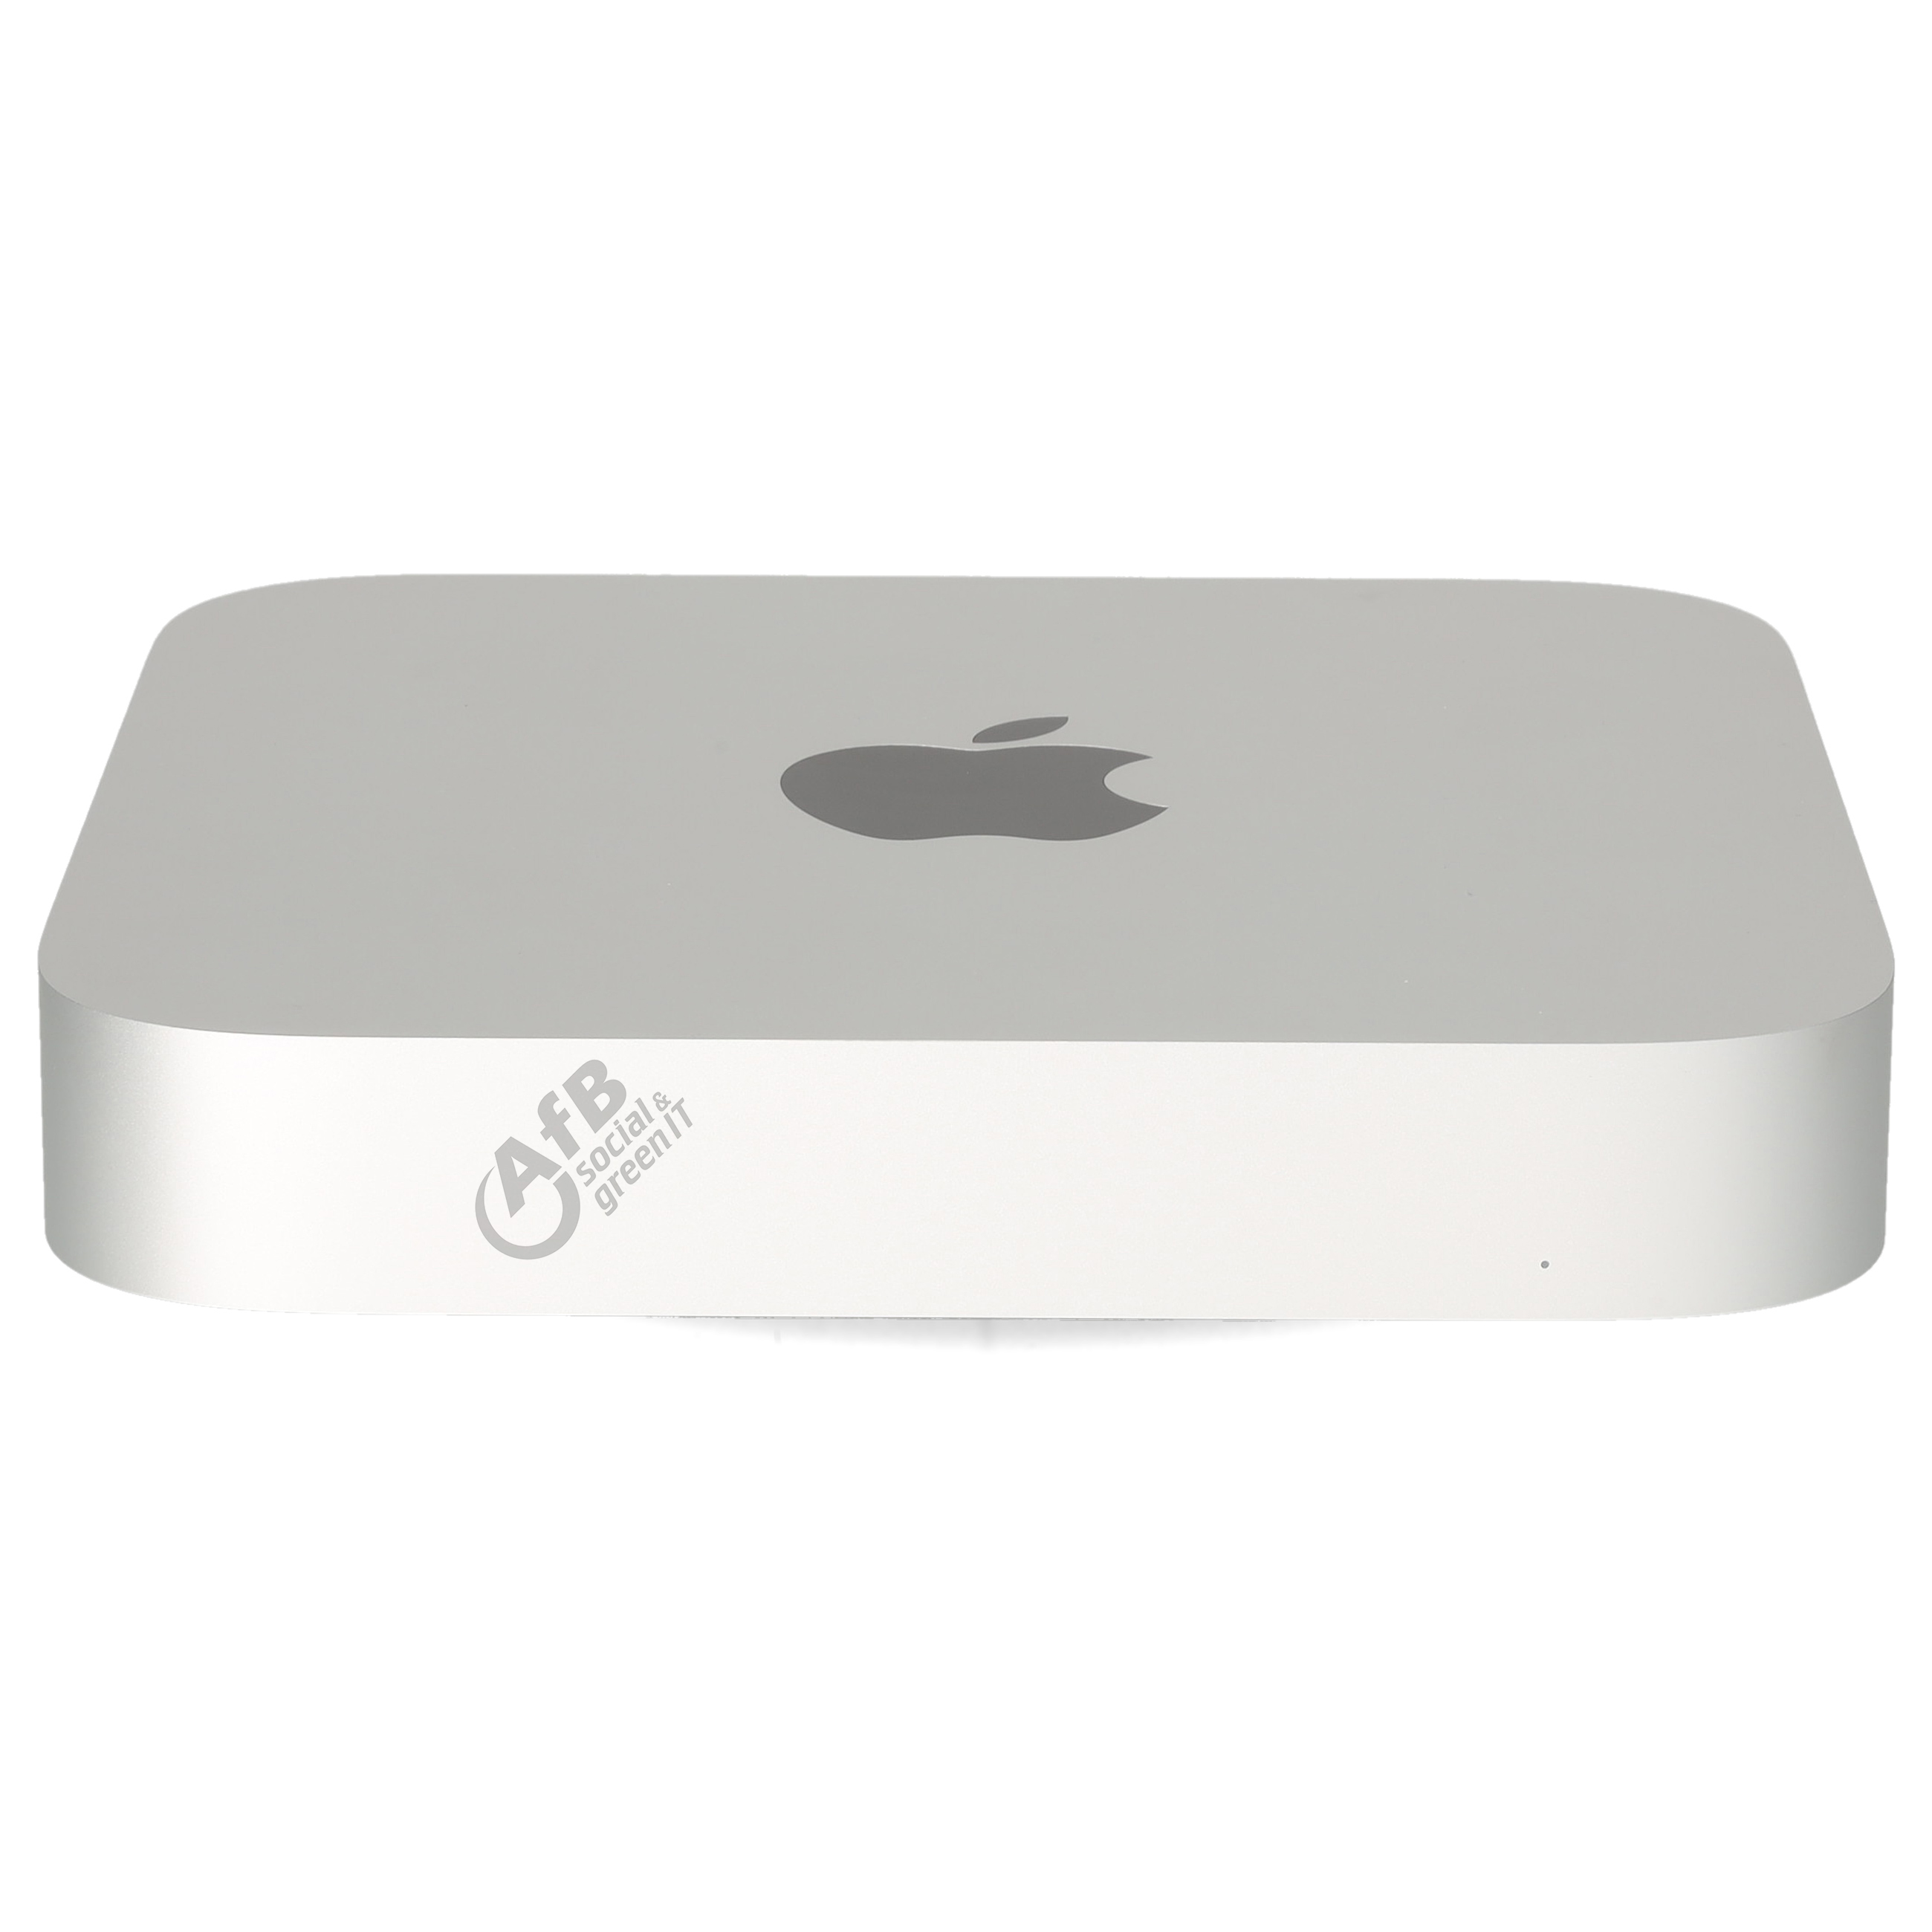 Apple Mac mini M1 (2020)OVP geöffnet - geöffnet